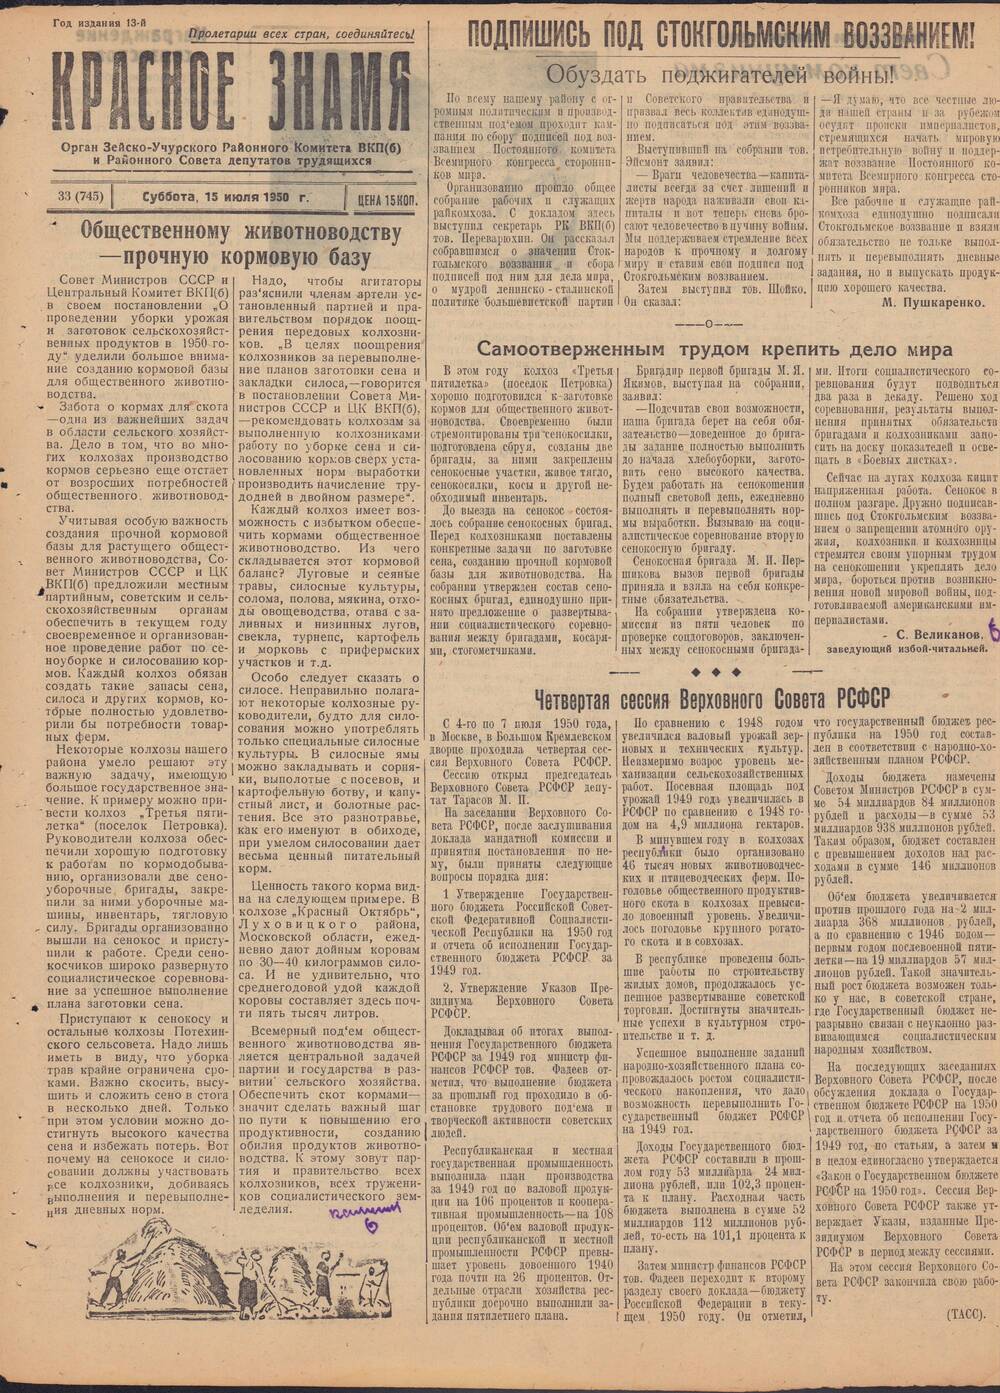 Газета Красное знамя №33 (745) от 15 июля 1950 года.